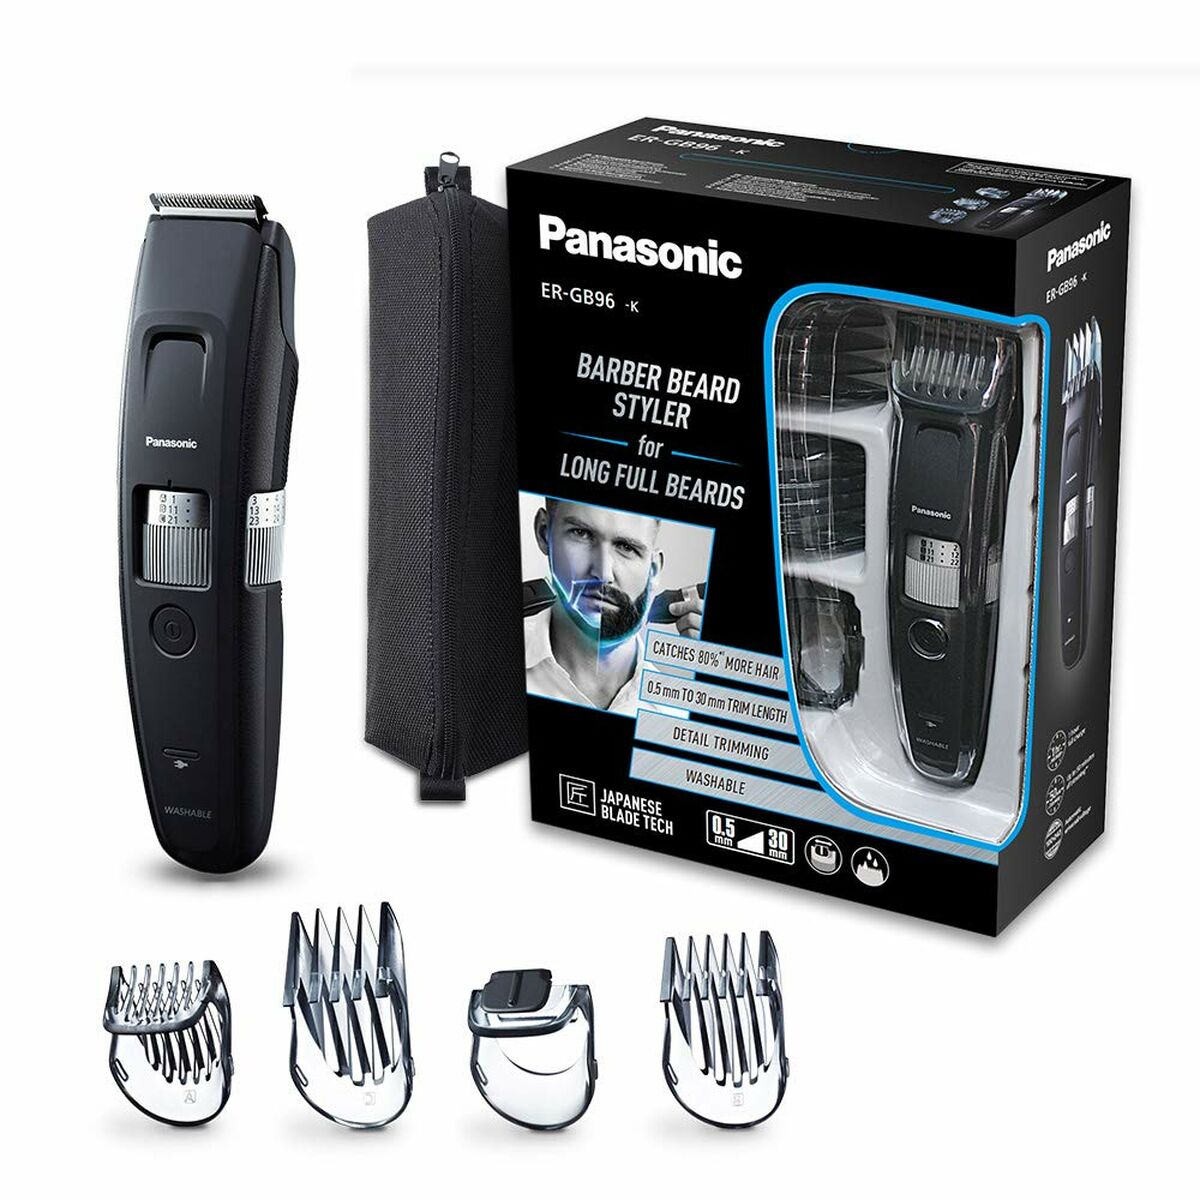 Baardtrimmer Panasonic